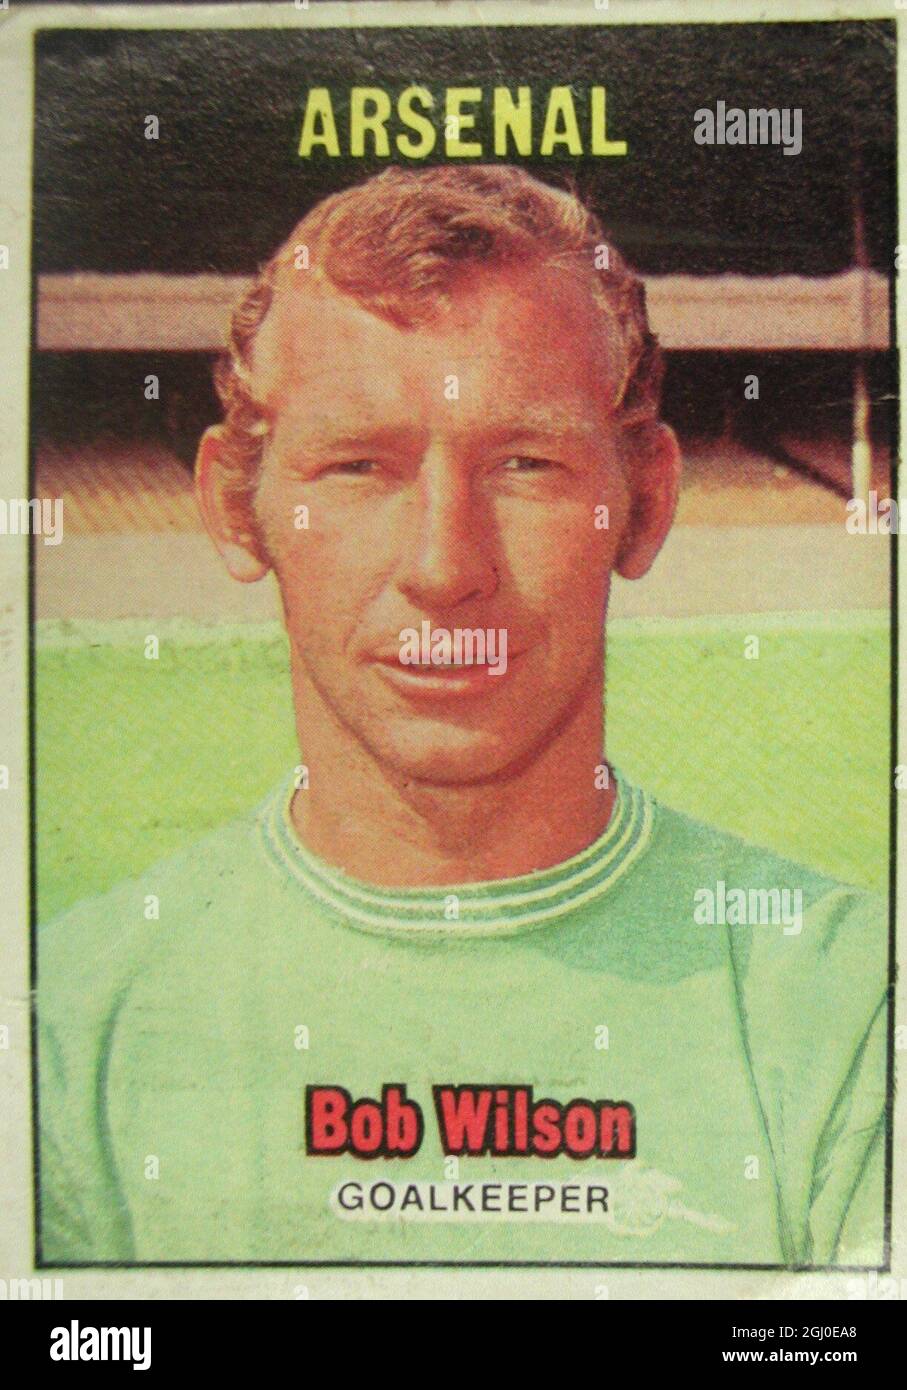 Bob Wilson - Arsenal ist in den letzten Saisons als eigenständiges Star aufgestiegen, nachdem er einige Zeit Reservetorwart bei Arsenal war. Seine brillanten Leistungen hatten einen großen Einfluss auf Arsenals Sieg im Fairs Cup, und Wilson klopft nun an die Tür für internationale Anerkennung. Stockfoto